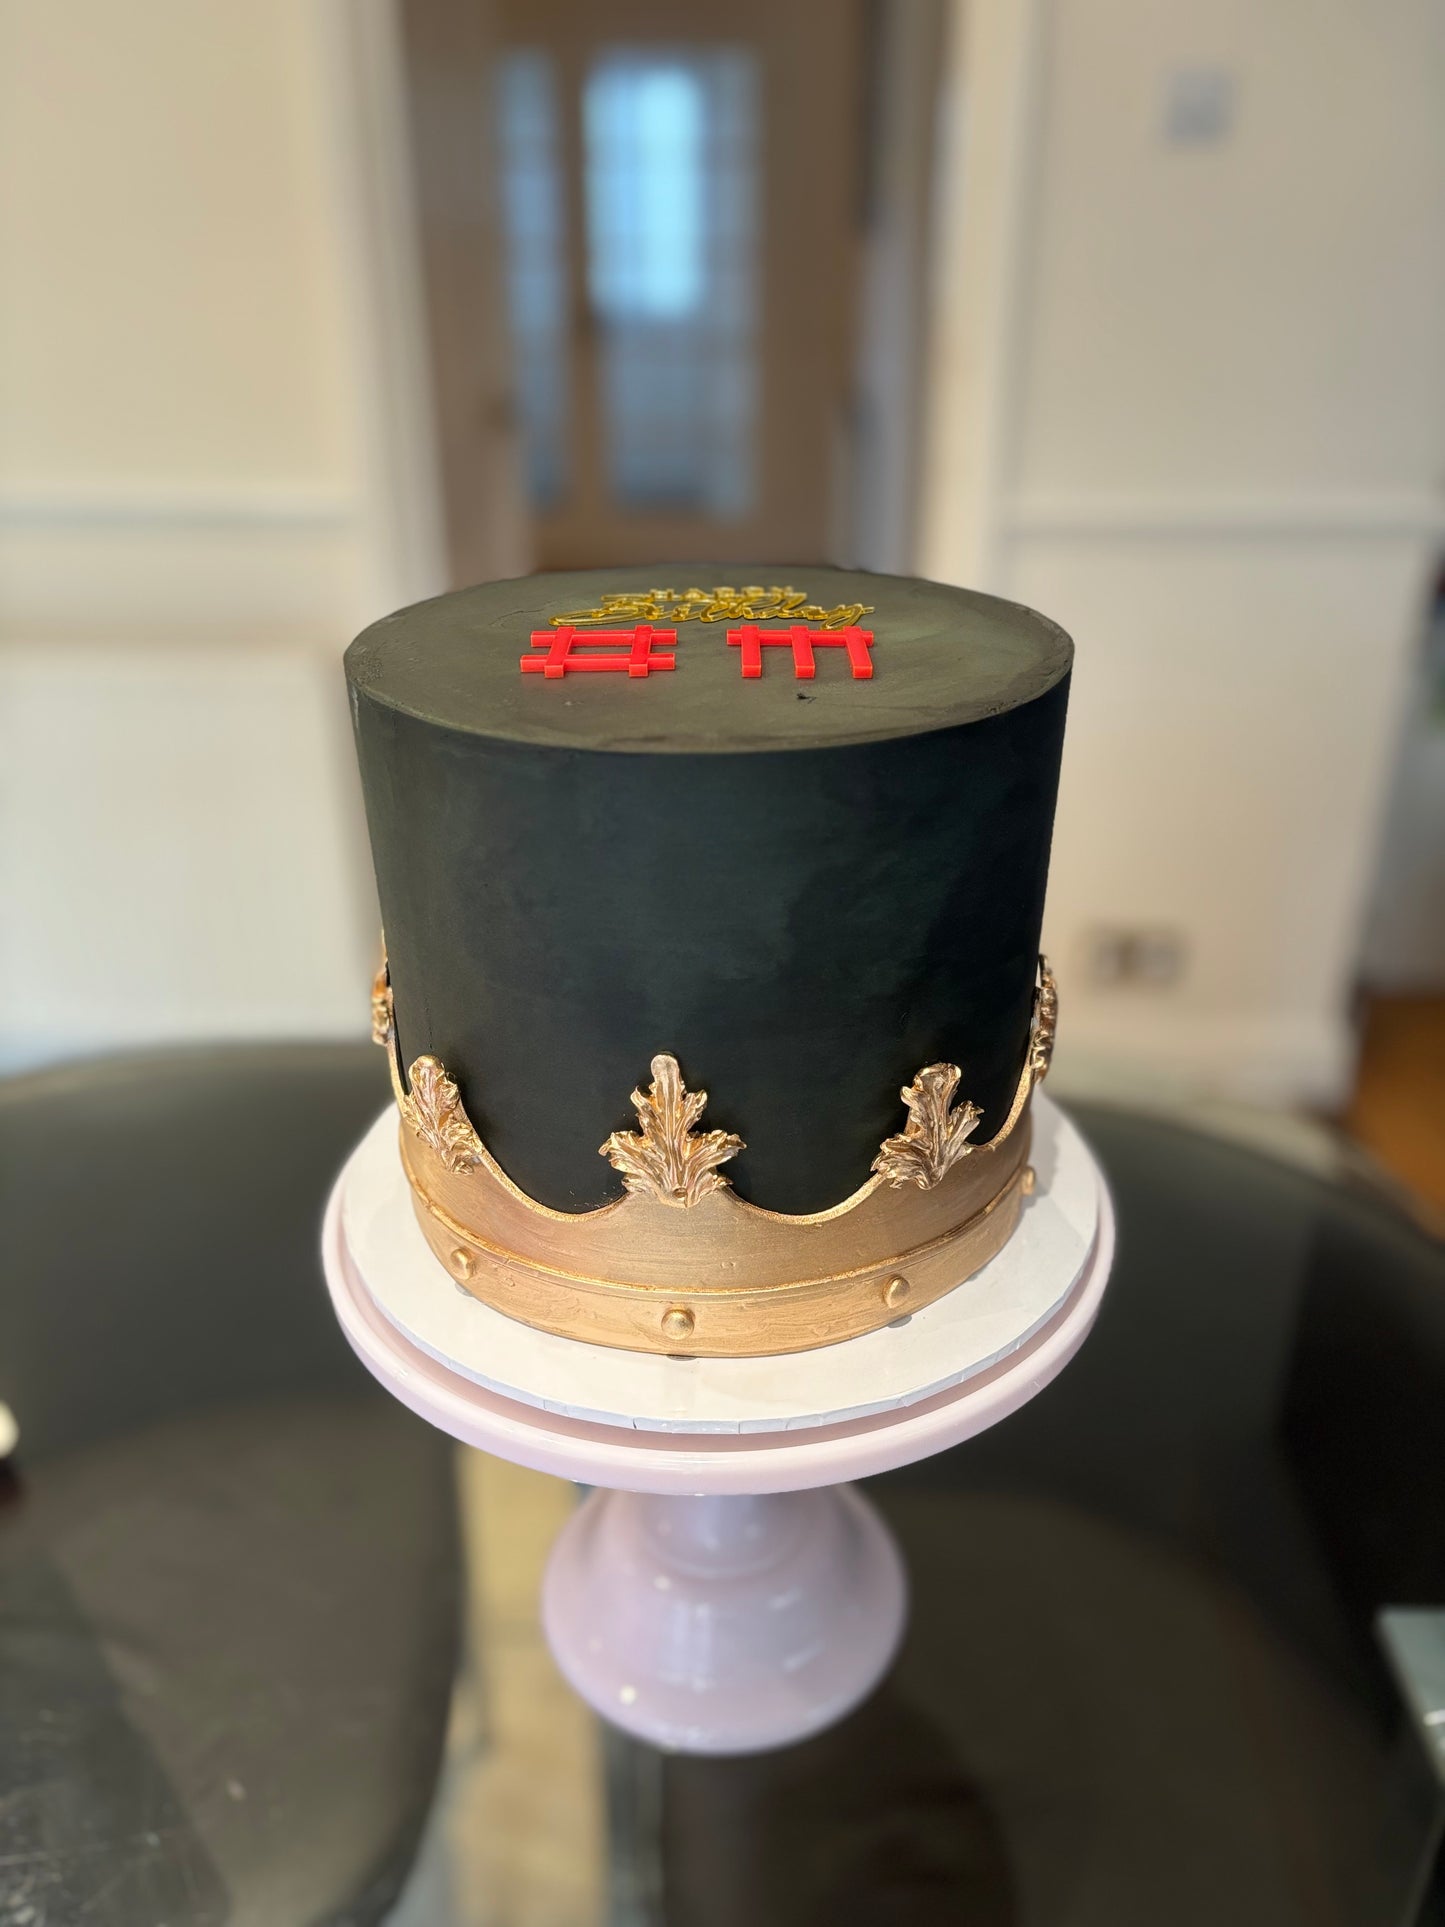 Depeche Mode themed cake